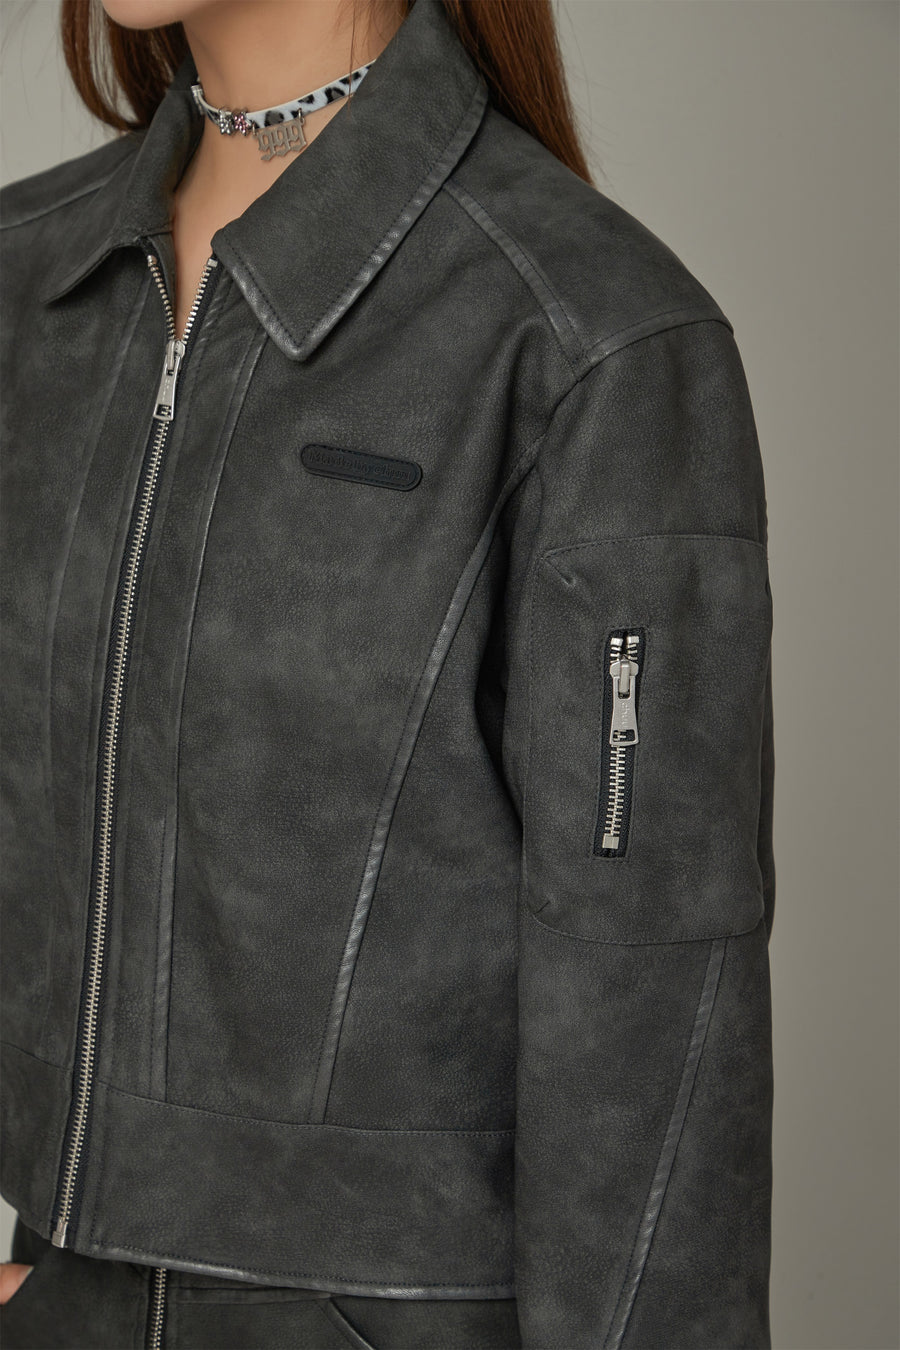 CHUU Simple Printed Leather Jacket